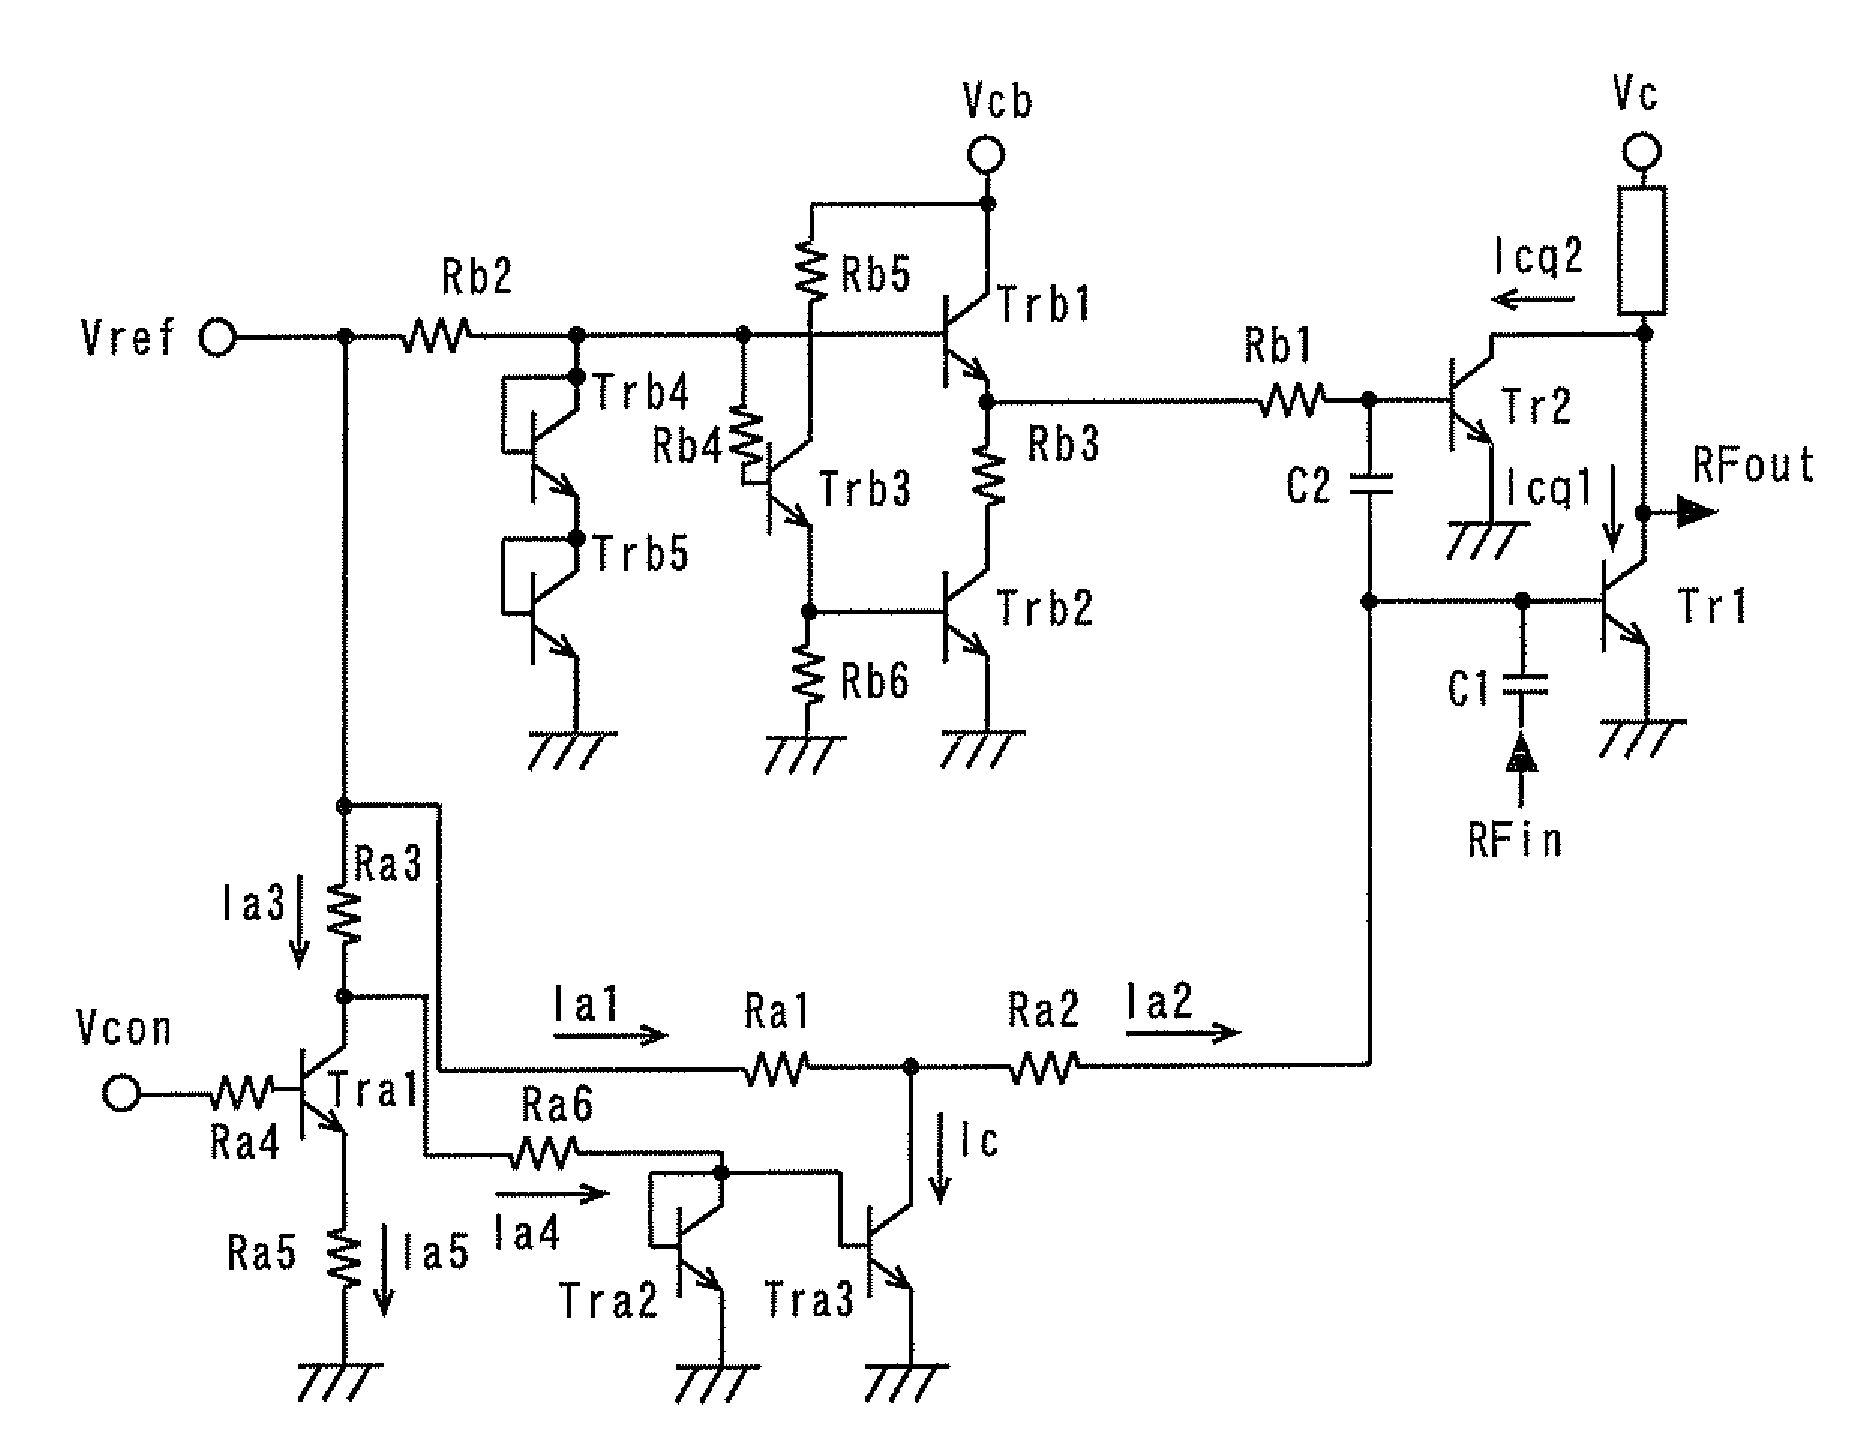 Power amplifier